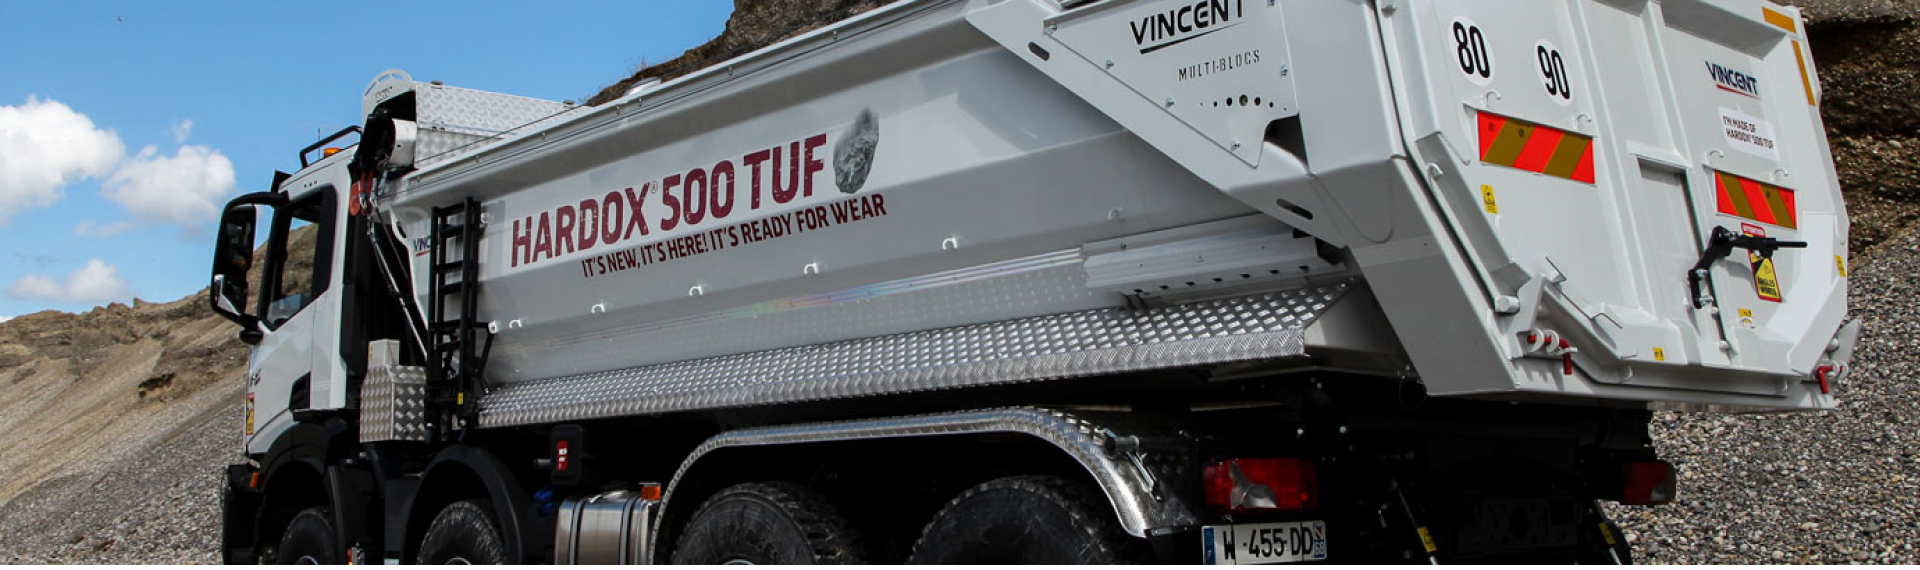 Camion ribaltabile in un cantiere con cassone realizzato in Hardox® 500 Tuf, con lo slogan "It's New, It's Here, It's Ready for Wear!"  